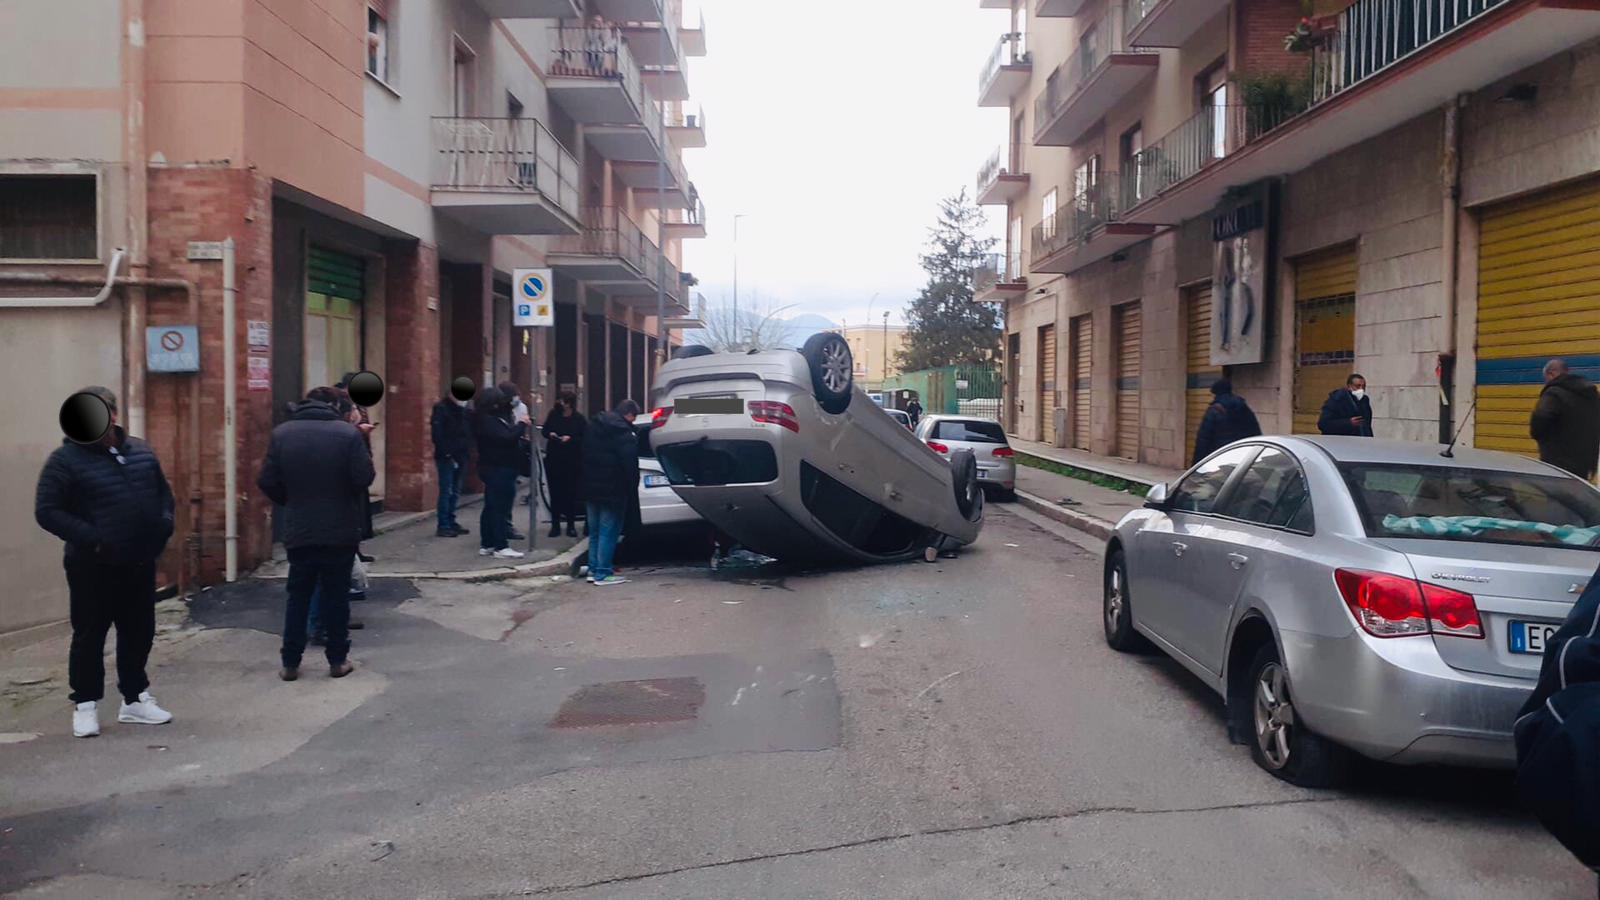 Benevento| Auto si ribalta e danneggia due vetture in sosta, illeso giovane